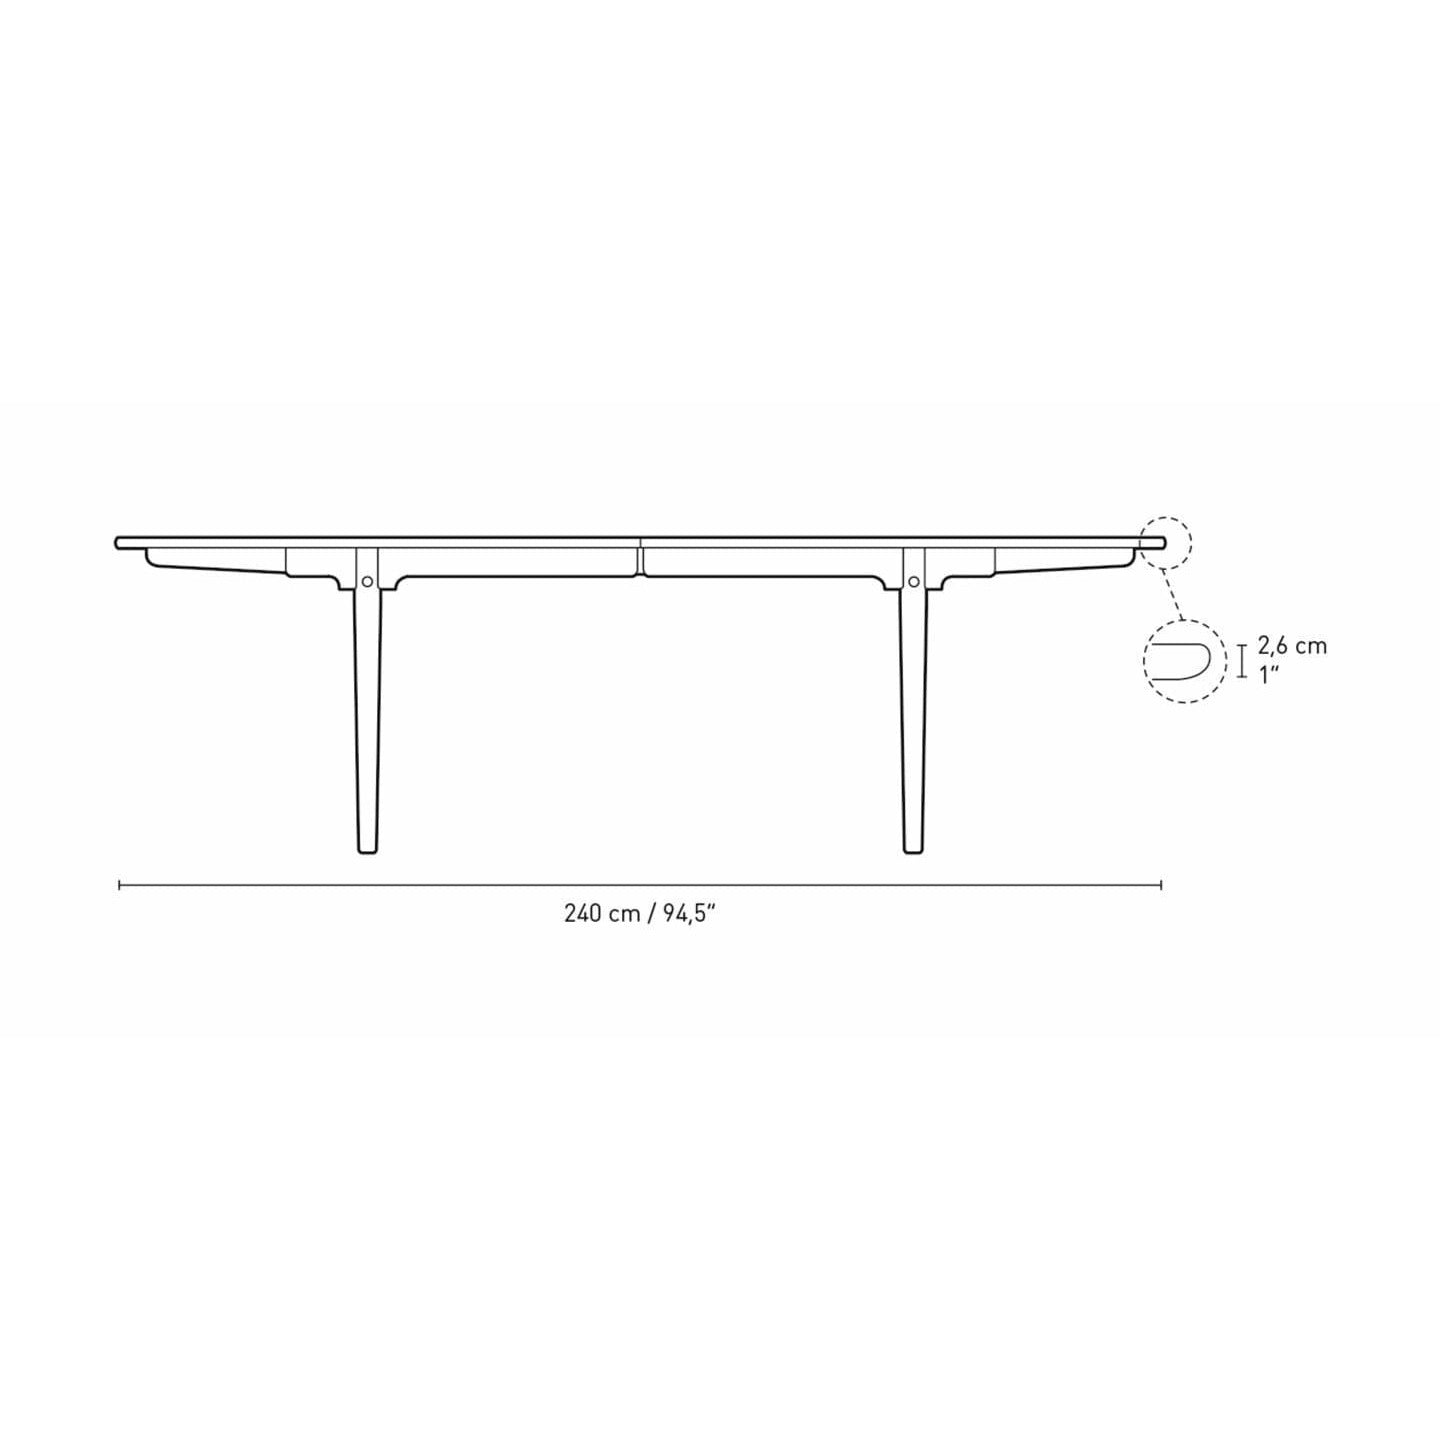 Stół jadalny Carl Hansen CH339 zaprojektowany dla 2 wyciągniętych talerzy, dębowych naoliwia